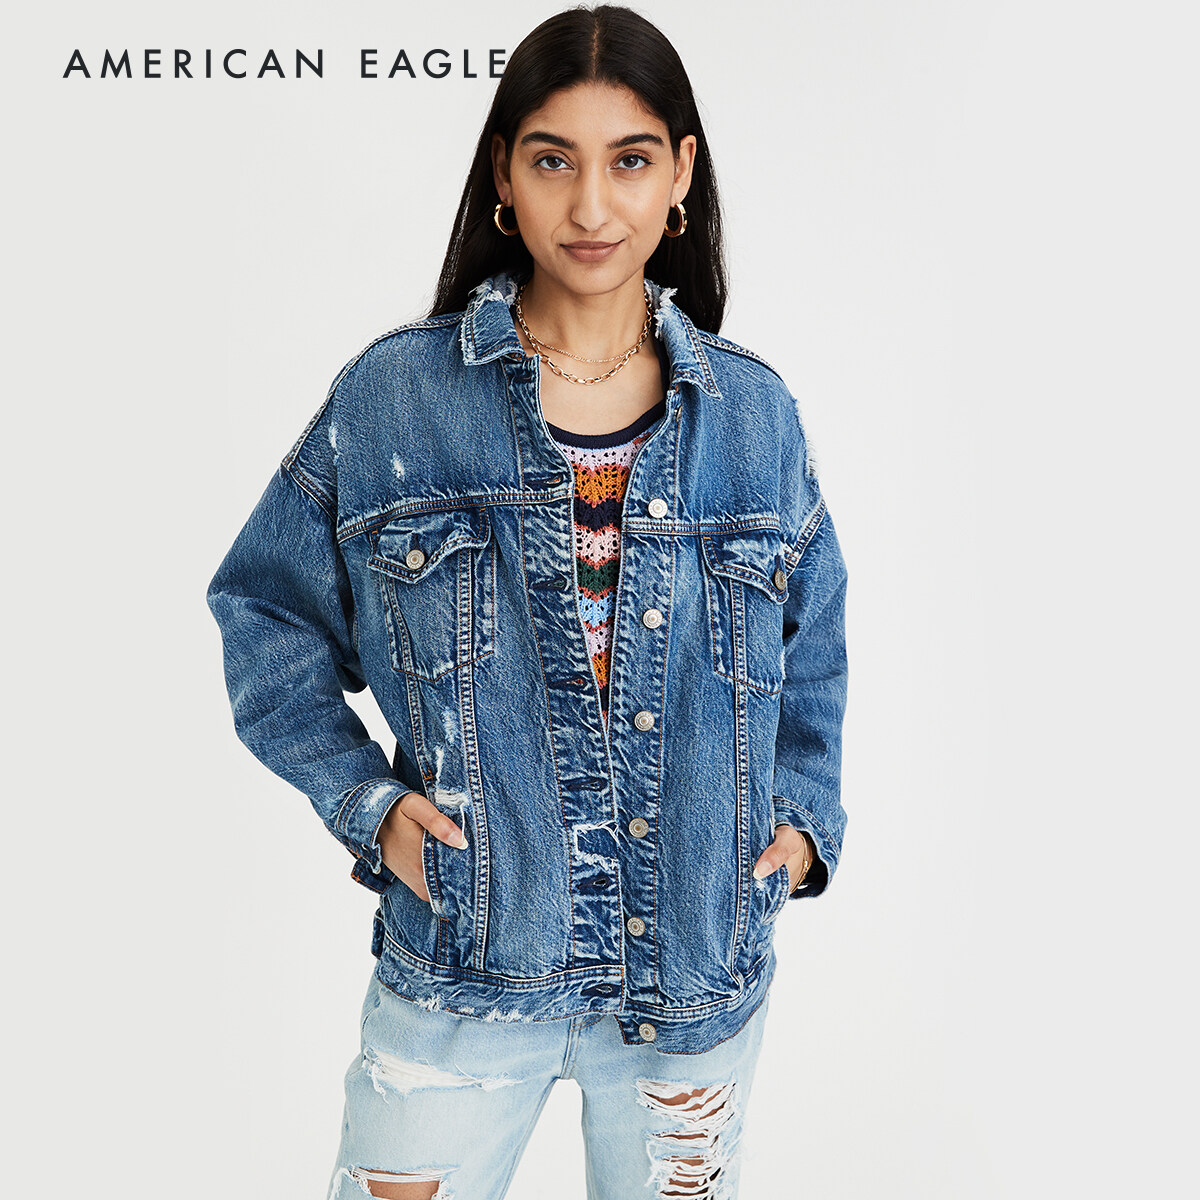 American Eagle Boyfriend Denim Jacket เสื้อ แจ็คเก็ต ผู้หญิง ยีนส์ ทรงบอยเฟรนด์(038-2821-936)